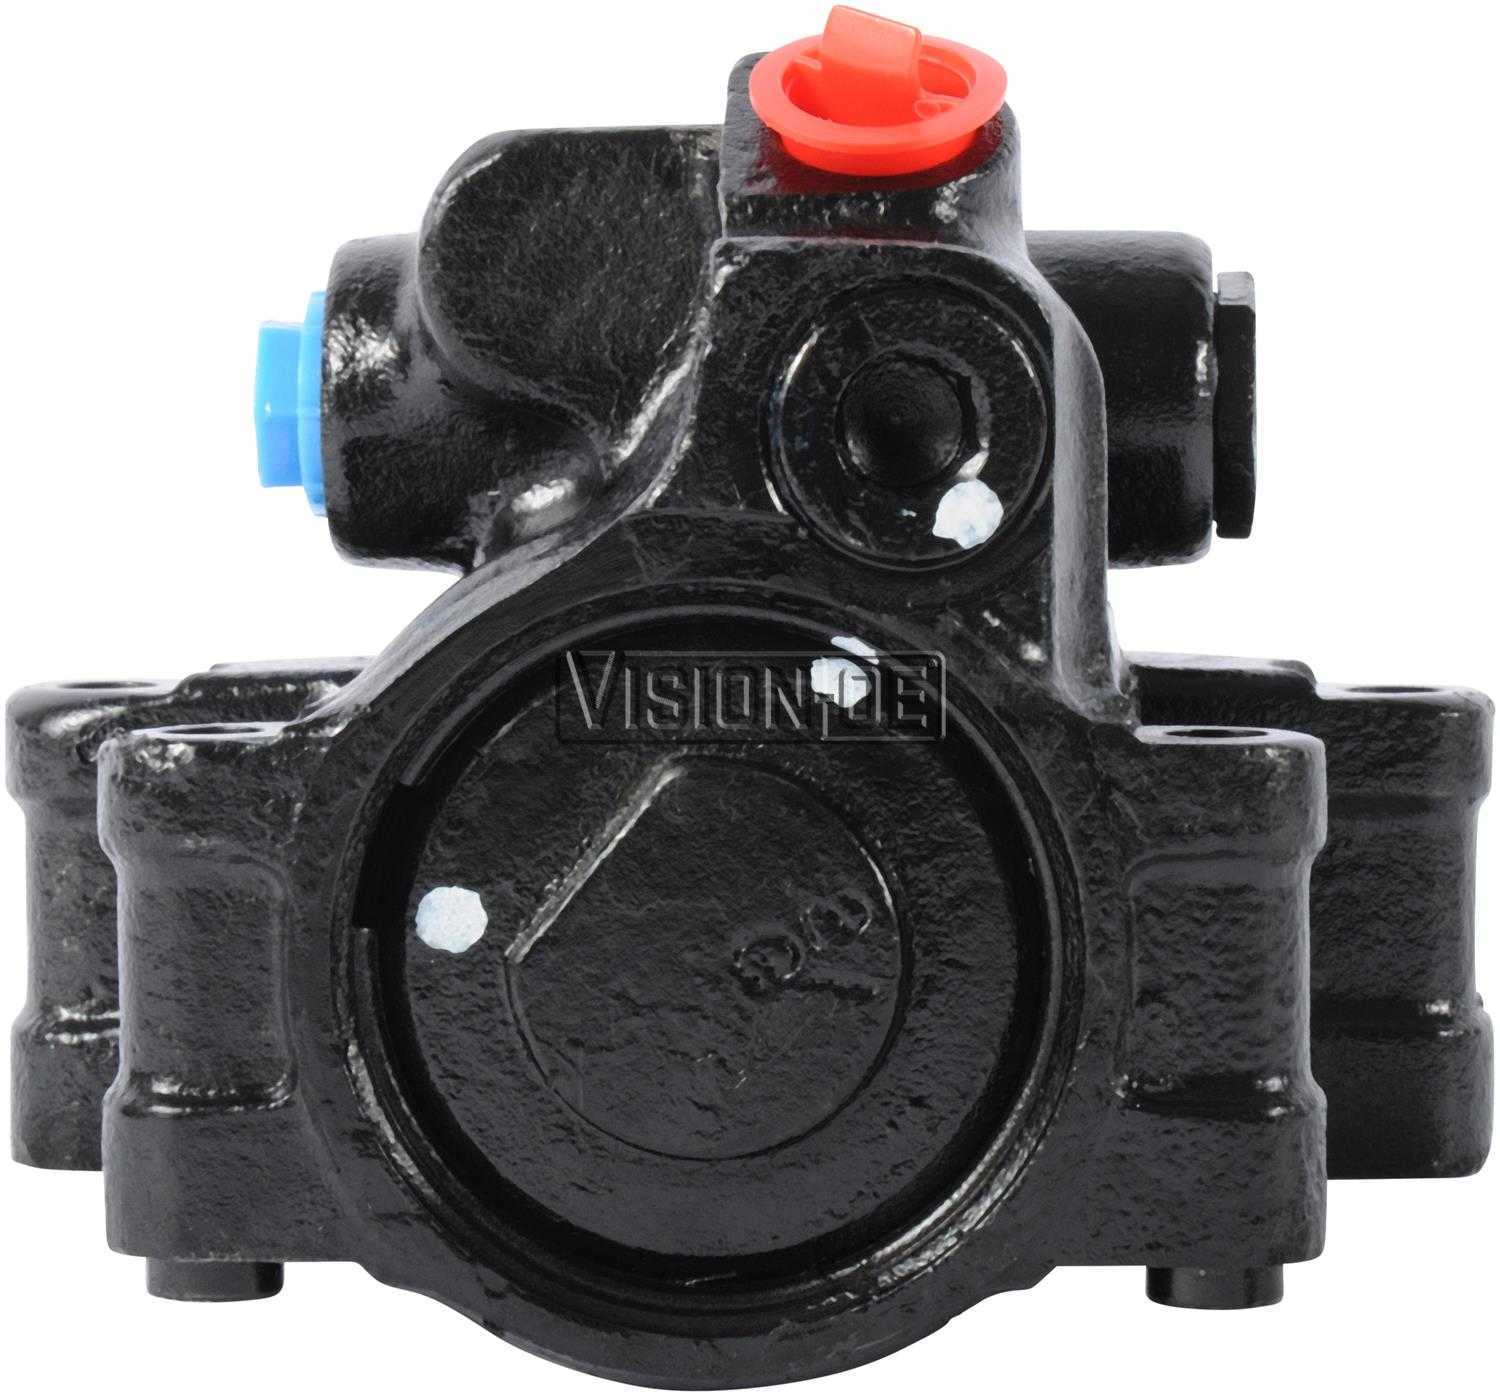 VISION-OE - Reman Power Steering Pump - VOE 712-0153